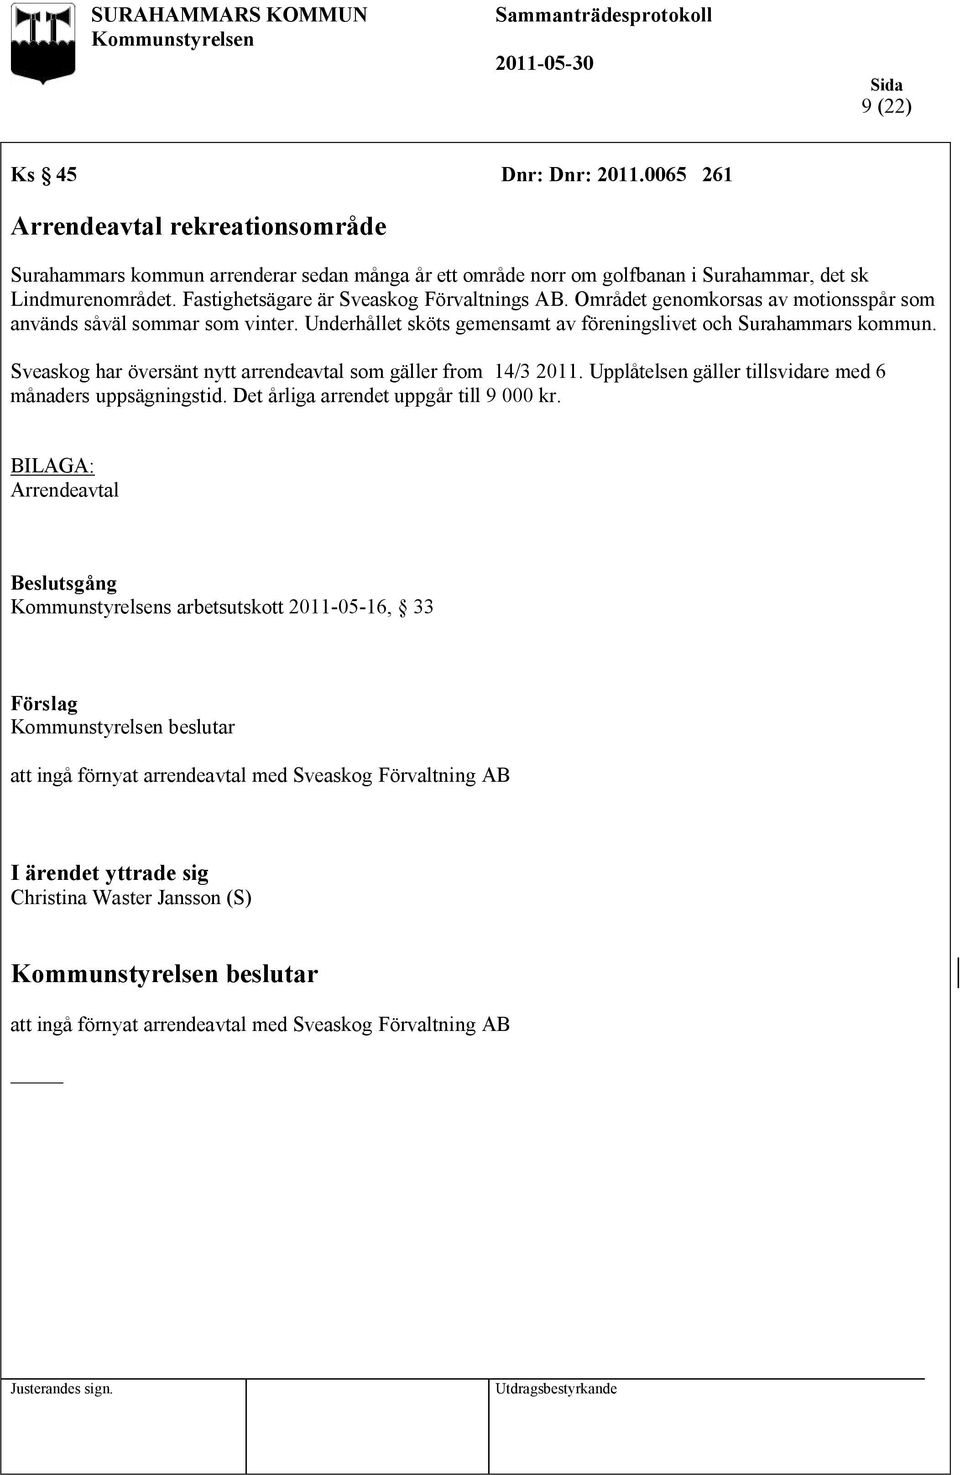 Sveaskog har översänt nytt arrendeavtal som gäller from 14/3 2011. Upplåtelsen gäller tillsvidare med 6 månaders uppsägningstid. Det årliga arrendet uppgår till 9 000 kr.